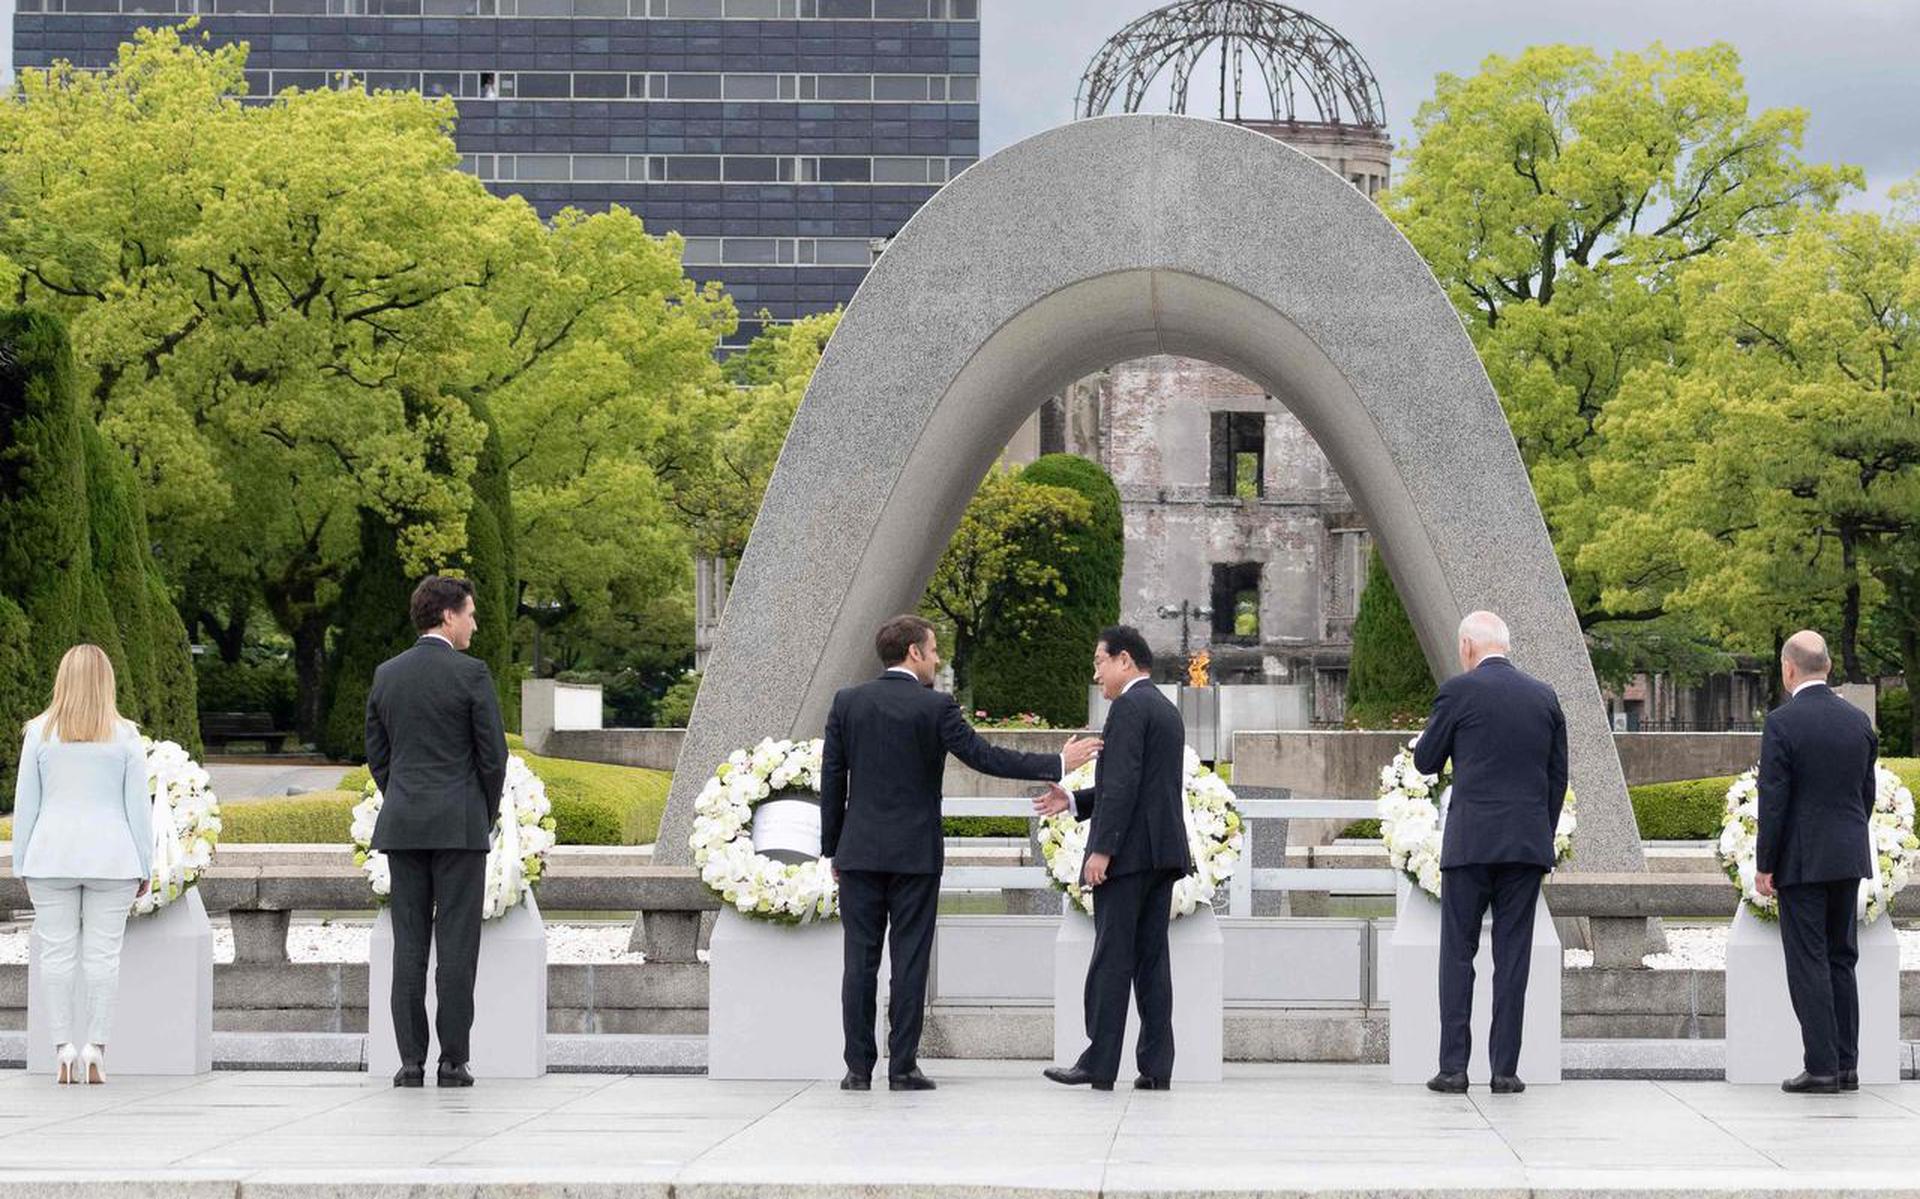 De regeringsleiders die in Hiroshima bijeen zijn legden vrijdag kransen voor de slachtoffers van de atoombom in 1945. Van links naar rechts: de Italiaanse premier Giorgia Meloni, haar Canadese collega Justin Trudeau, de Franse president Emmanuel Macron, de Japanse premier Fumio Kishida, VS-president Joe Biden en de Duitse kanselier Olaf Scholz.